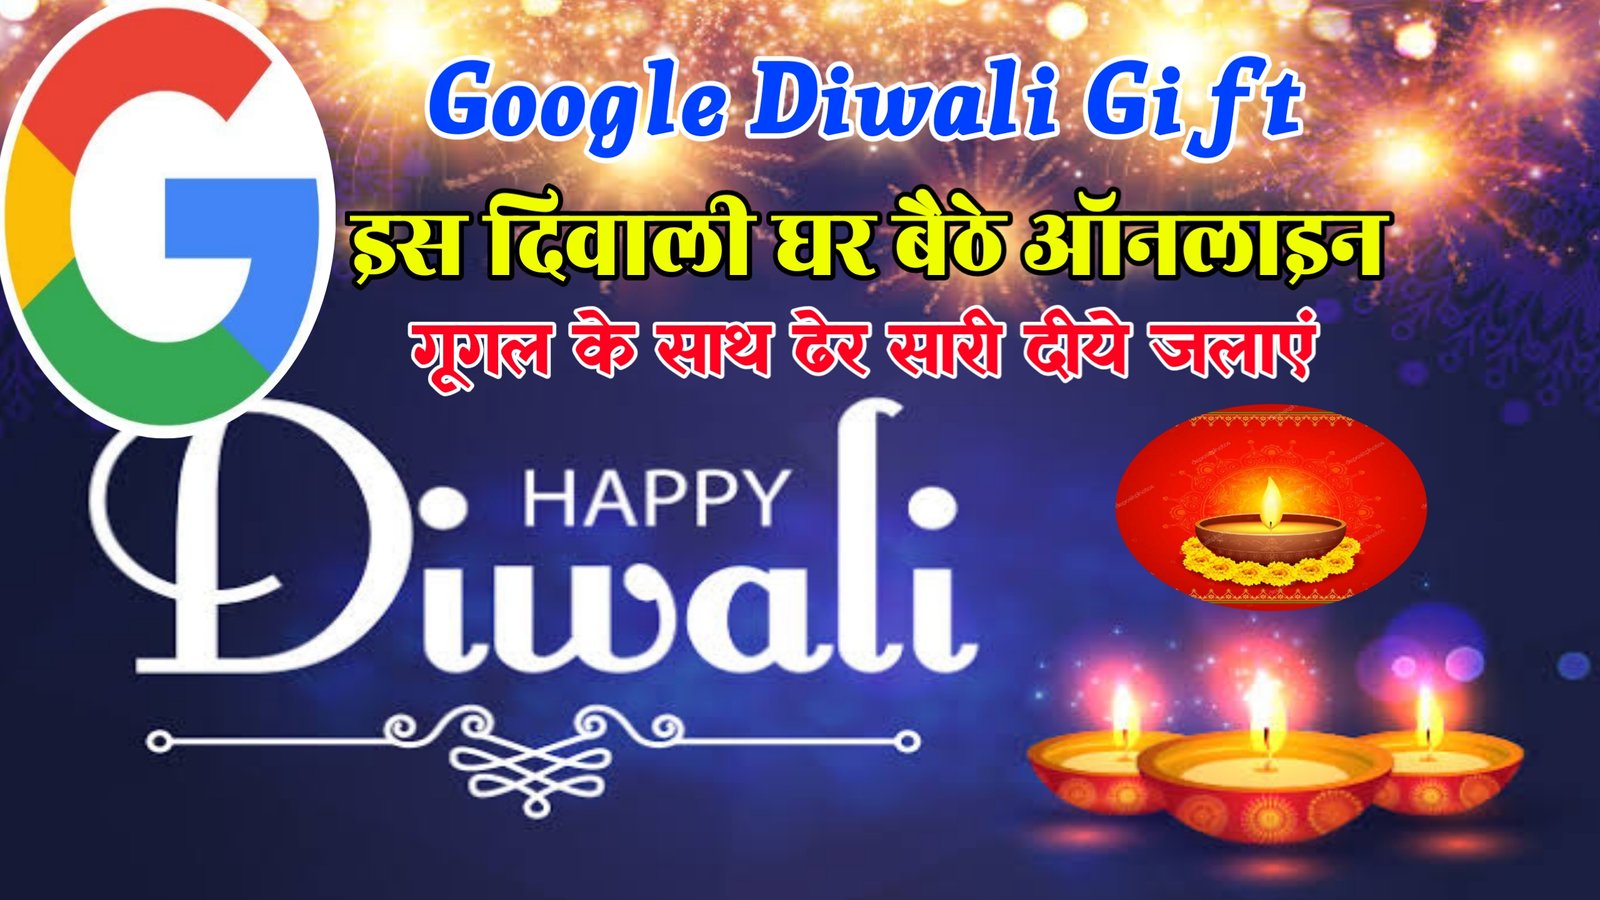 Diwali Offer Google Gift 2022 : इस दिवाली घर बैठे गूगल के साथ दीये जलाएं गूगल न्यू अपडेट